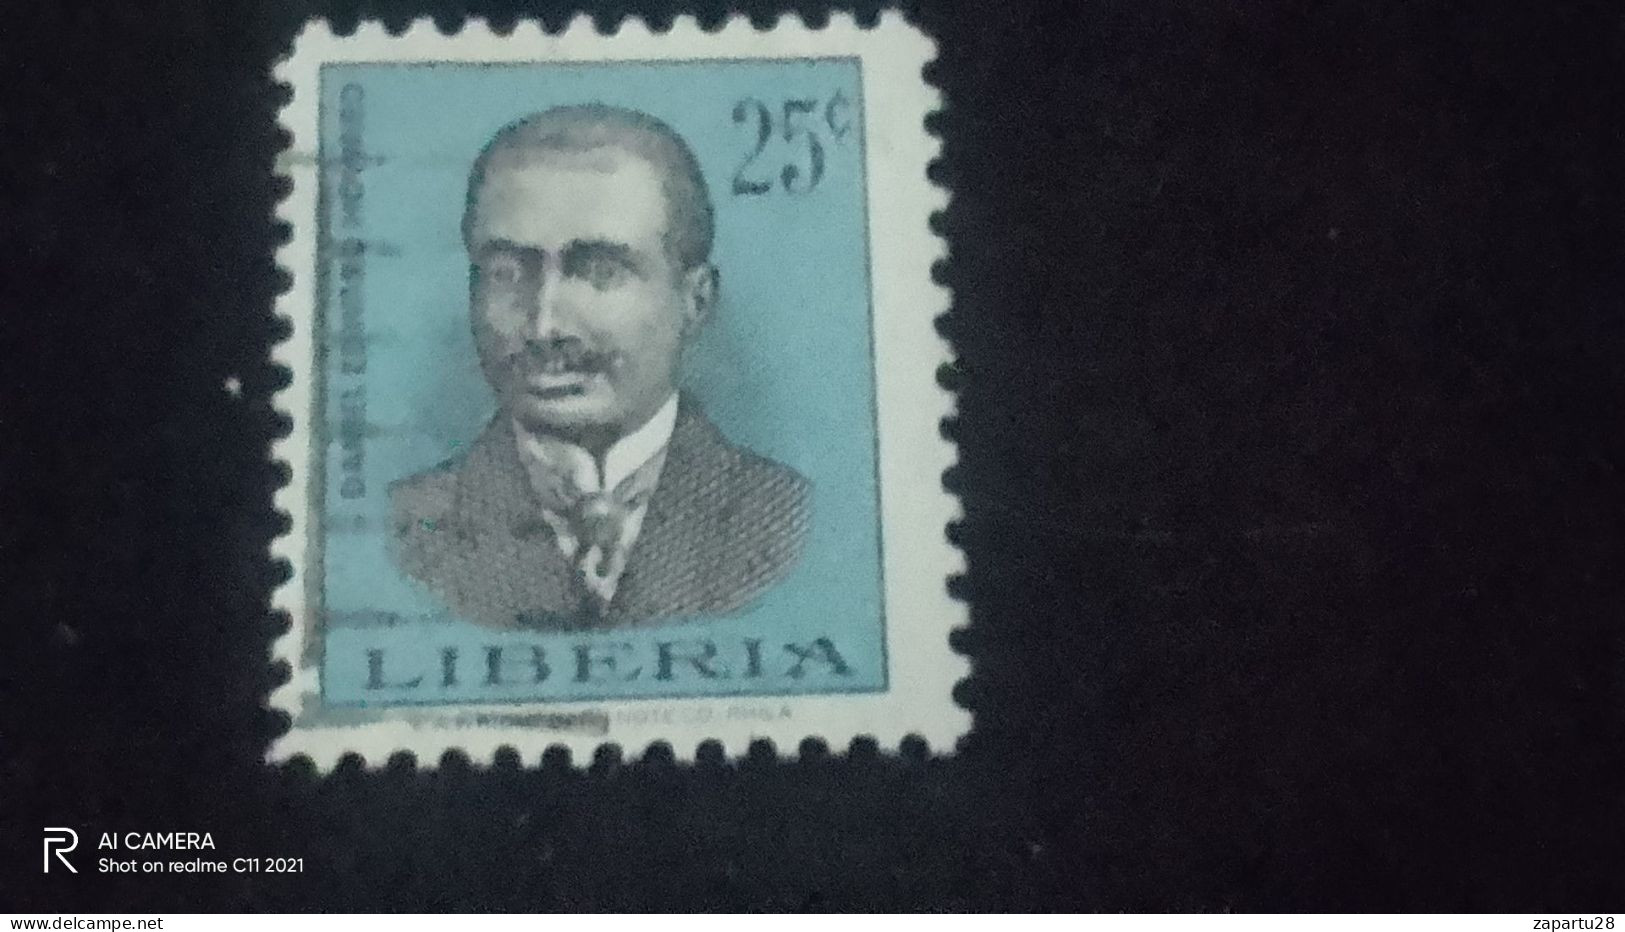 LİBERİA-          25    CENT               USED - Liberia